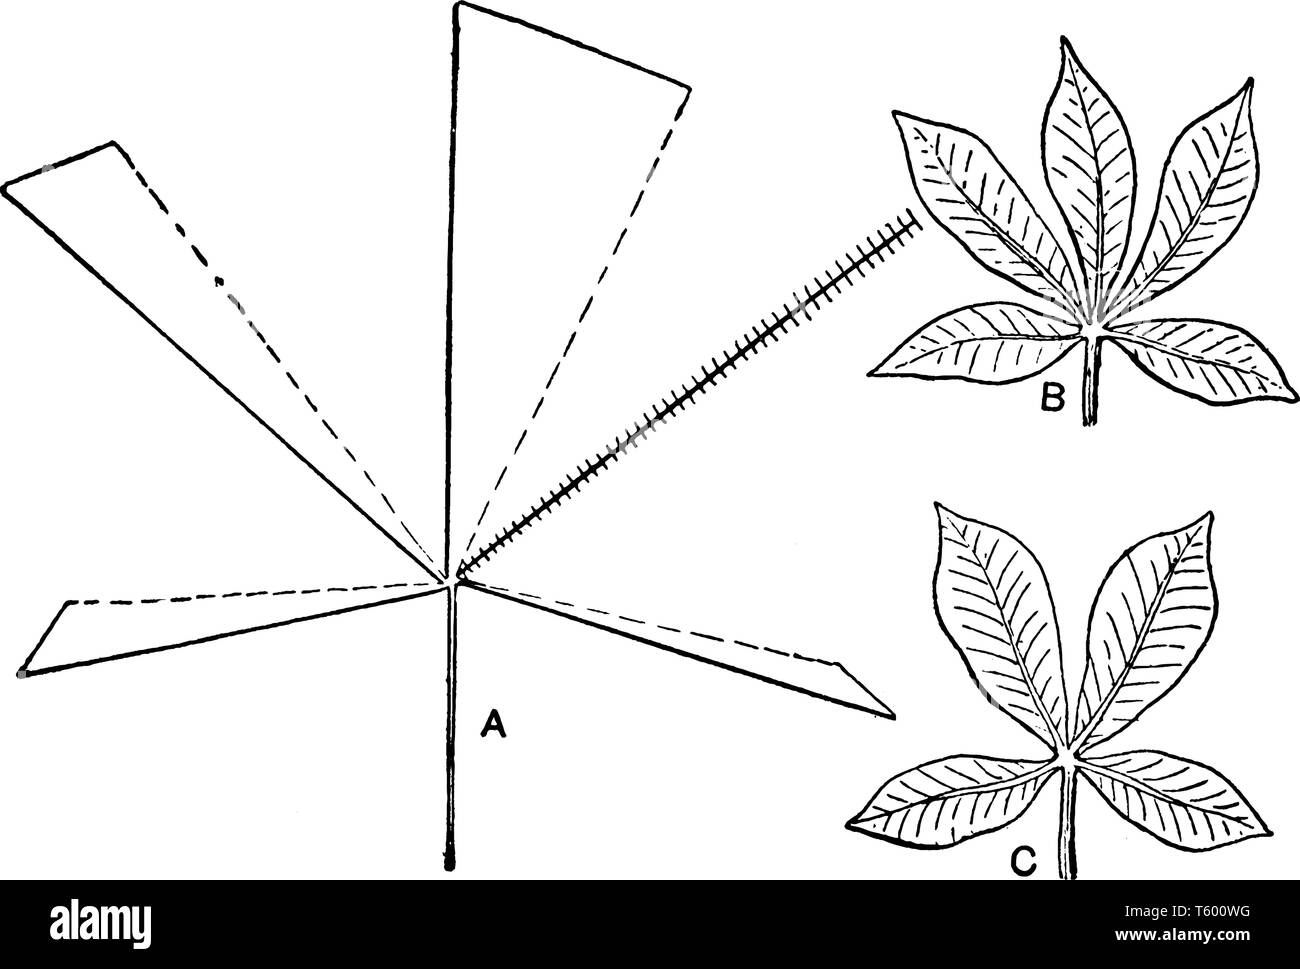 Ein Bild oder eine Grafik, die die Wirkung des aus einer Broschüre von einem palmately compound Leaf, vintage Strichzeichnung oder Gravur Abbildung. Stock Vektor